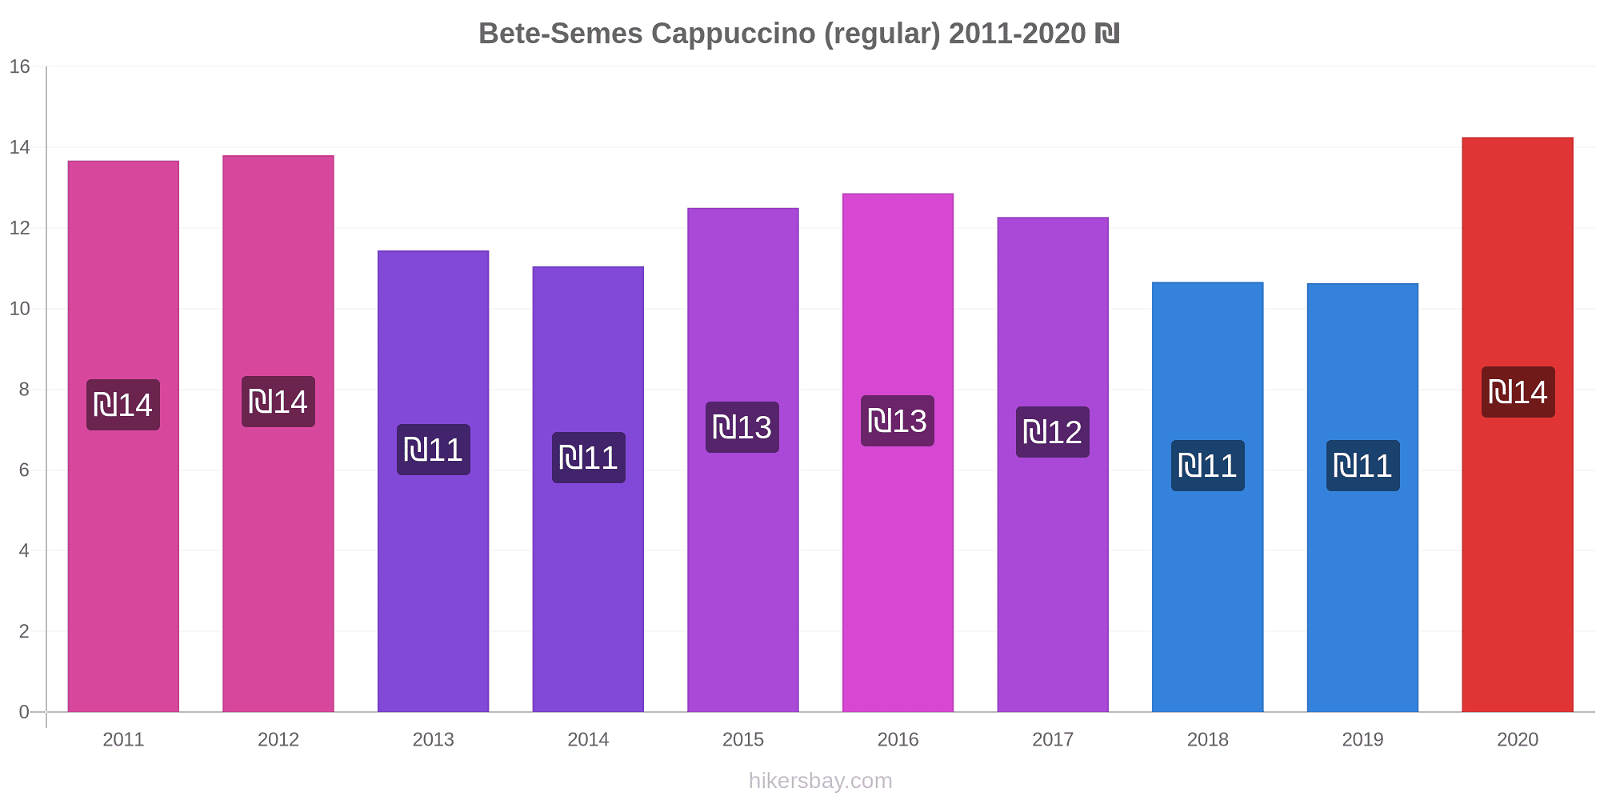 Bete-Semes variação de preço Capuccino (regular) hikersbay.com